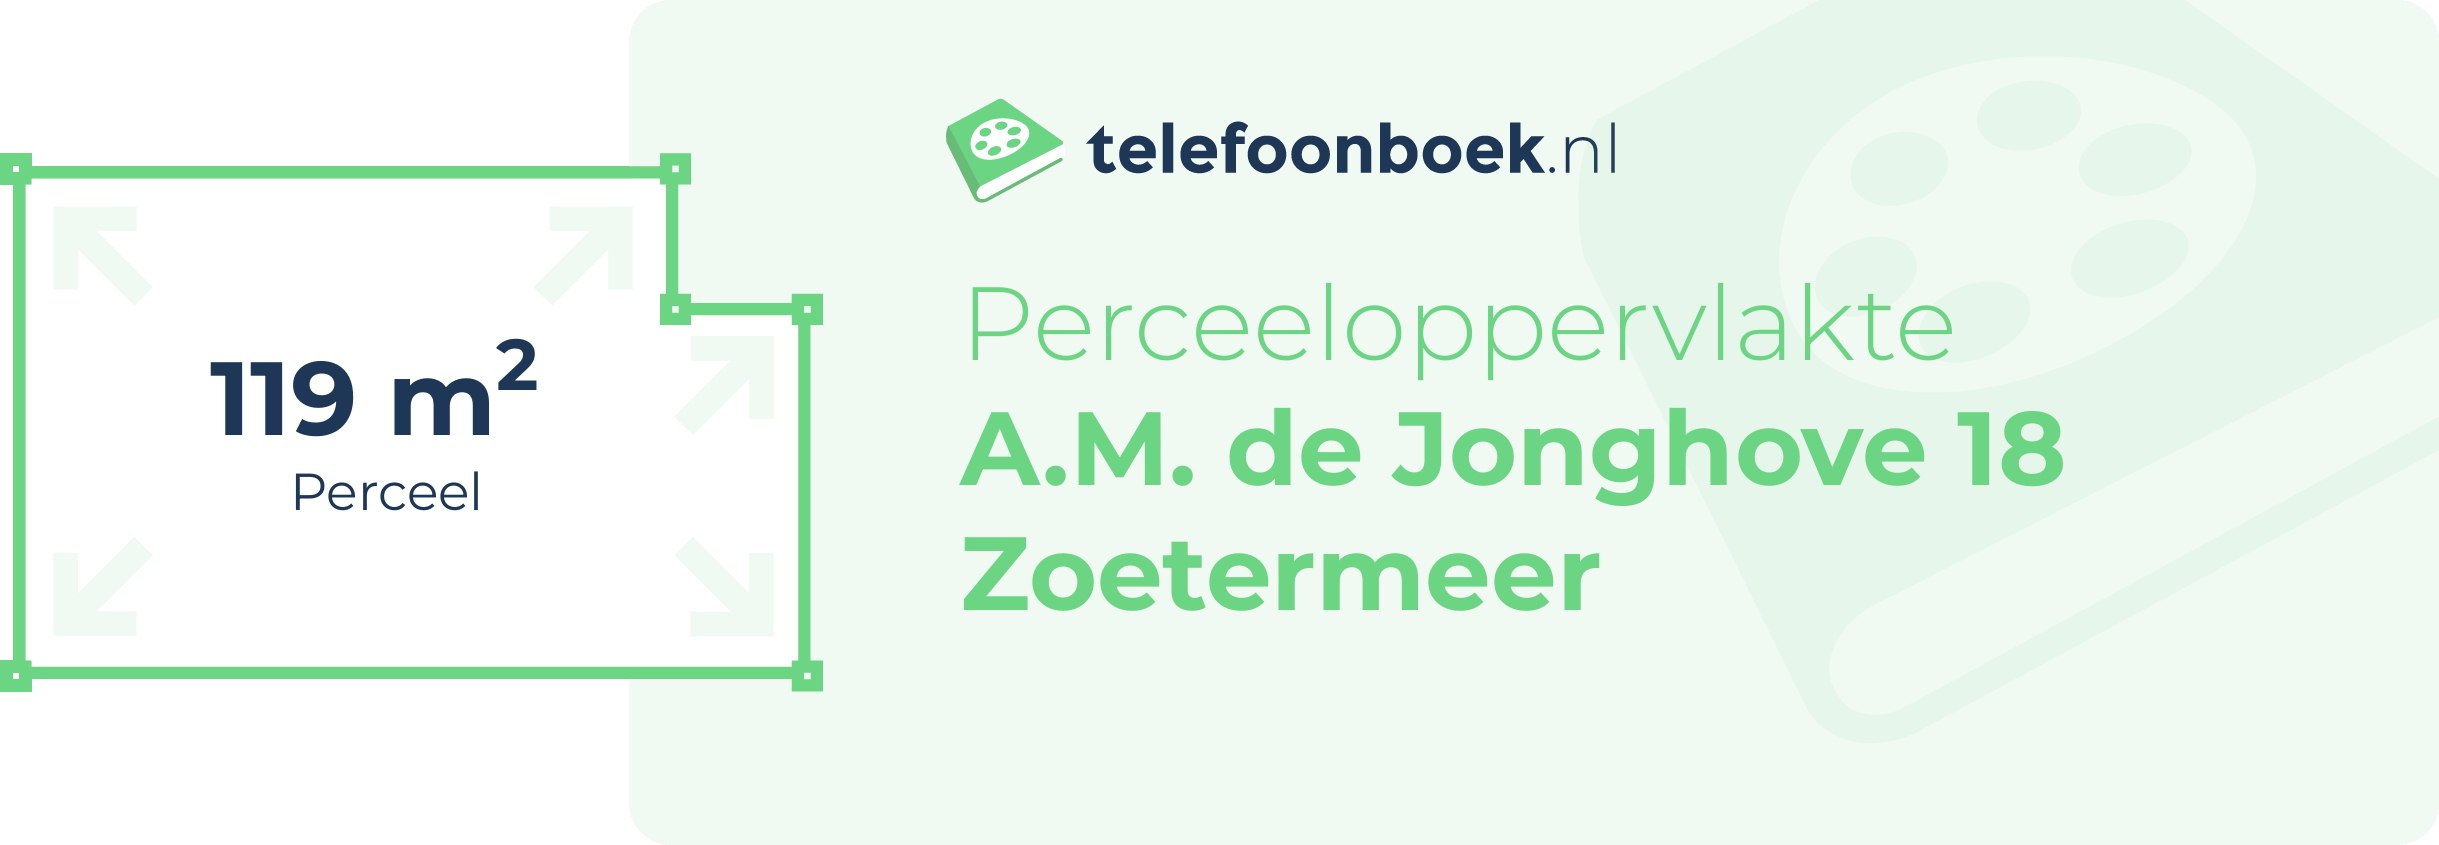 Perceeloppervlakte A.M. De Jonghove 18 Zoetermeer